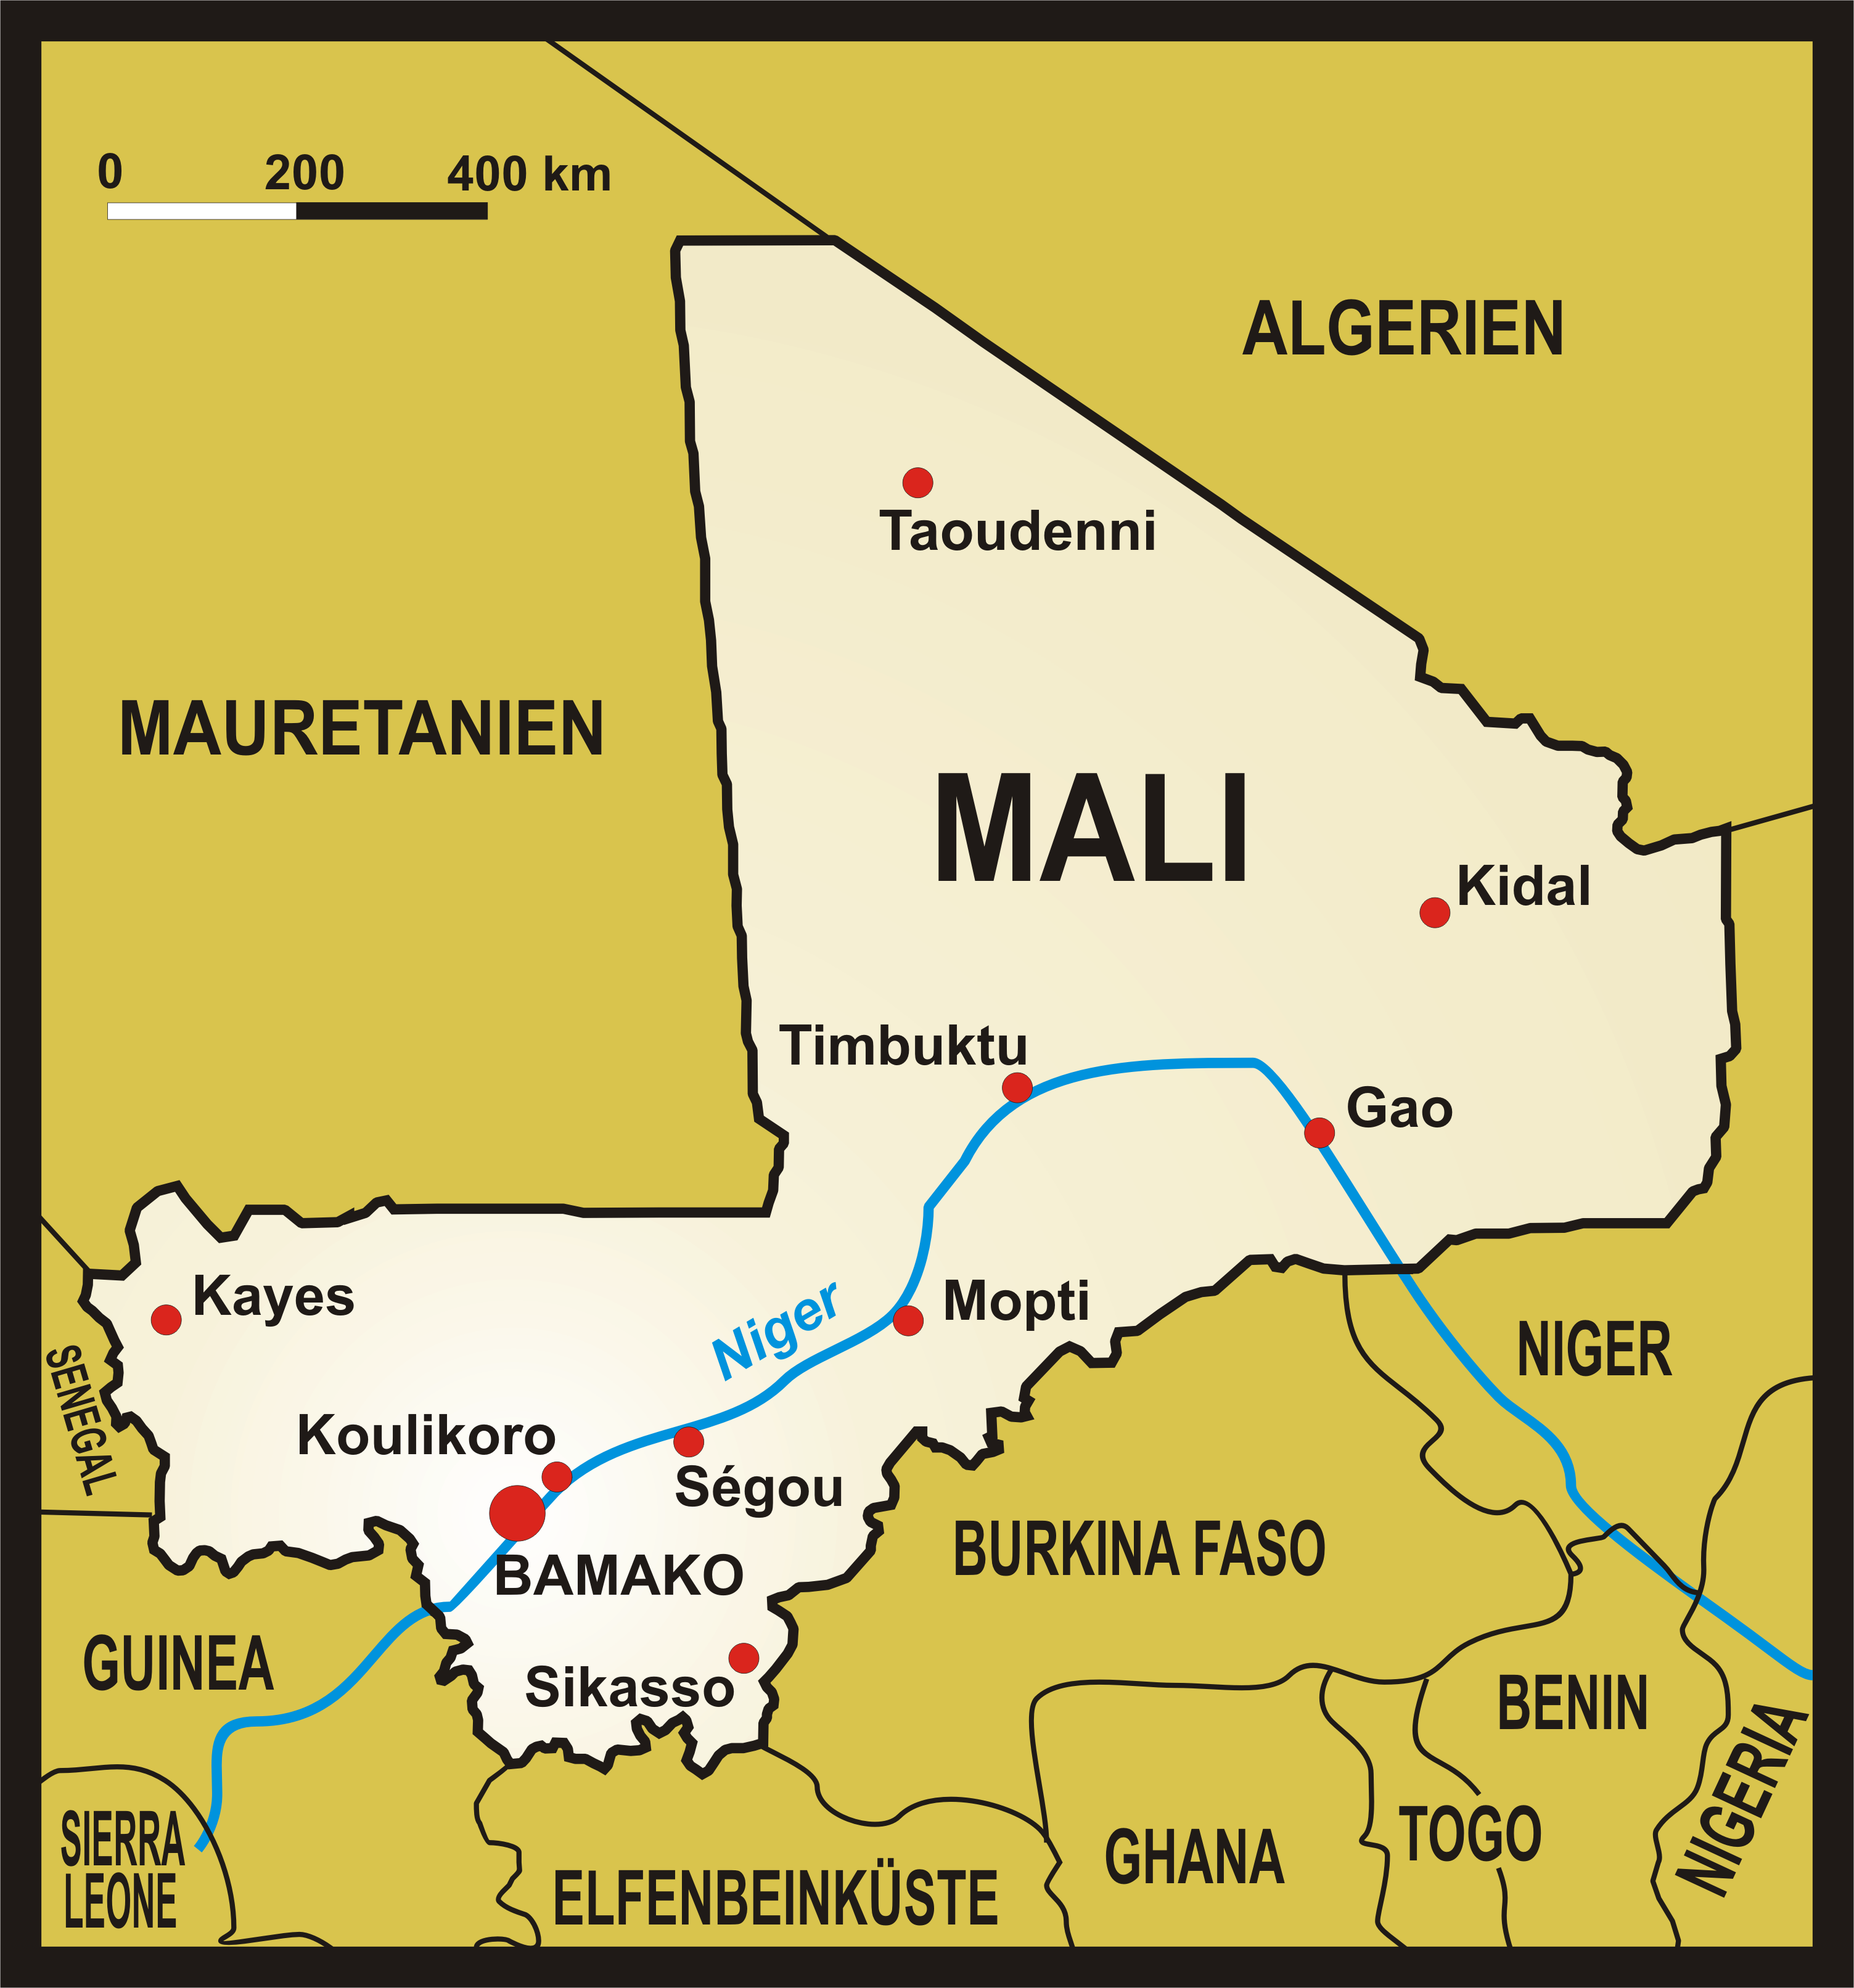 Deutschland darf sich an der Militärintervention in Mali in keinster